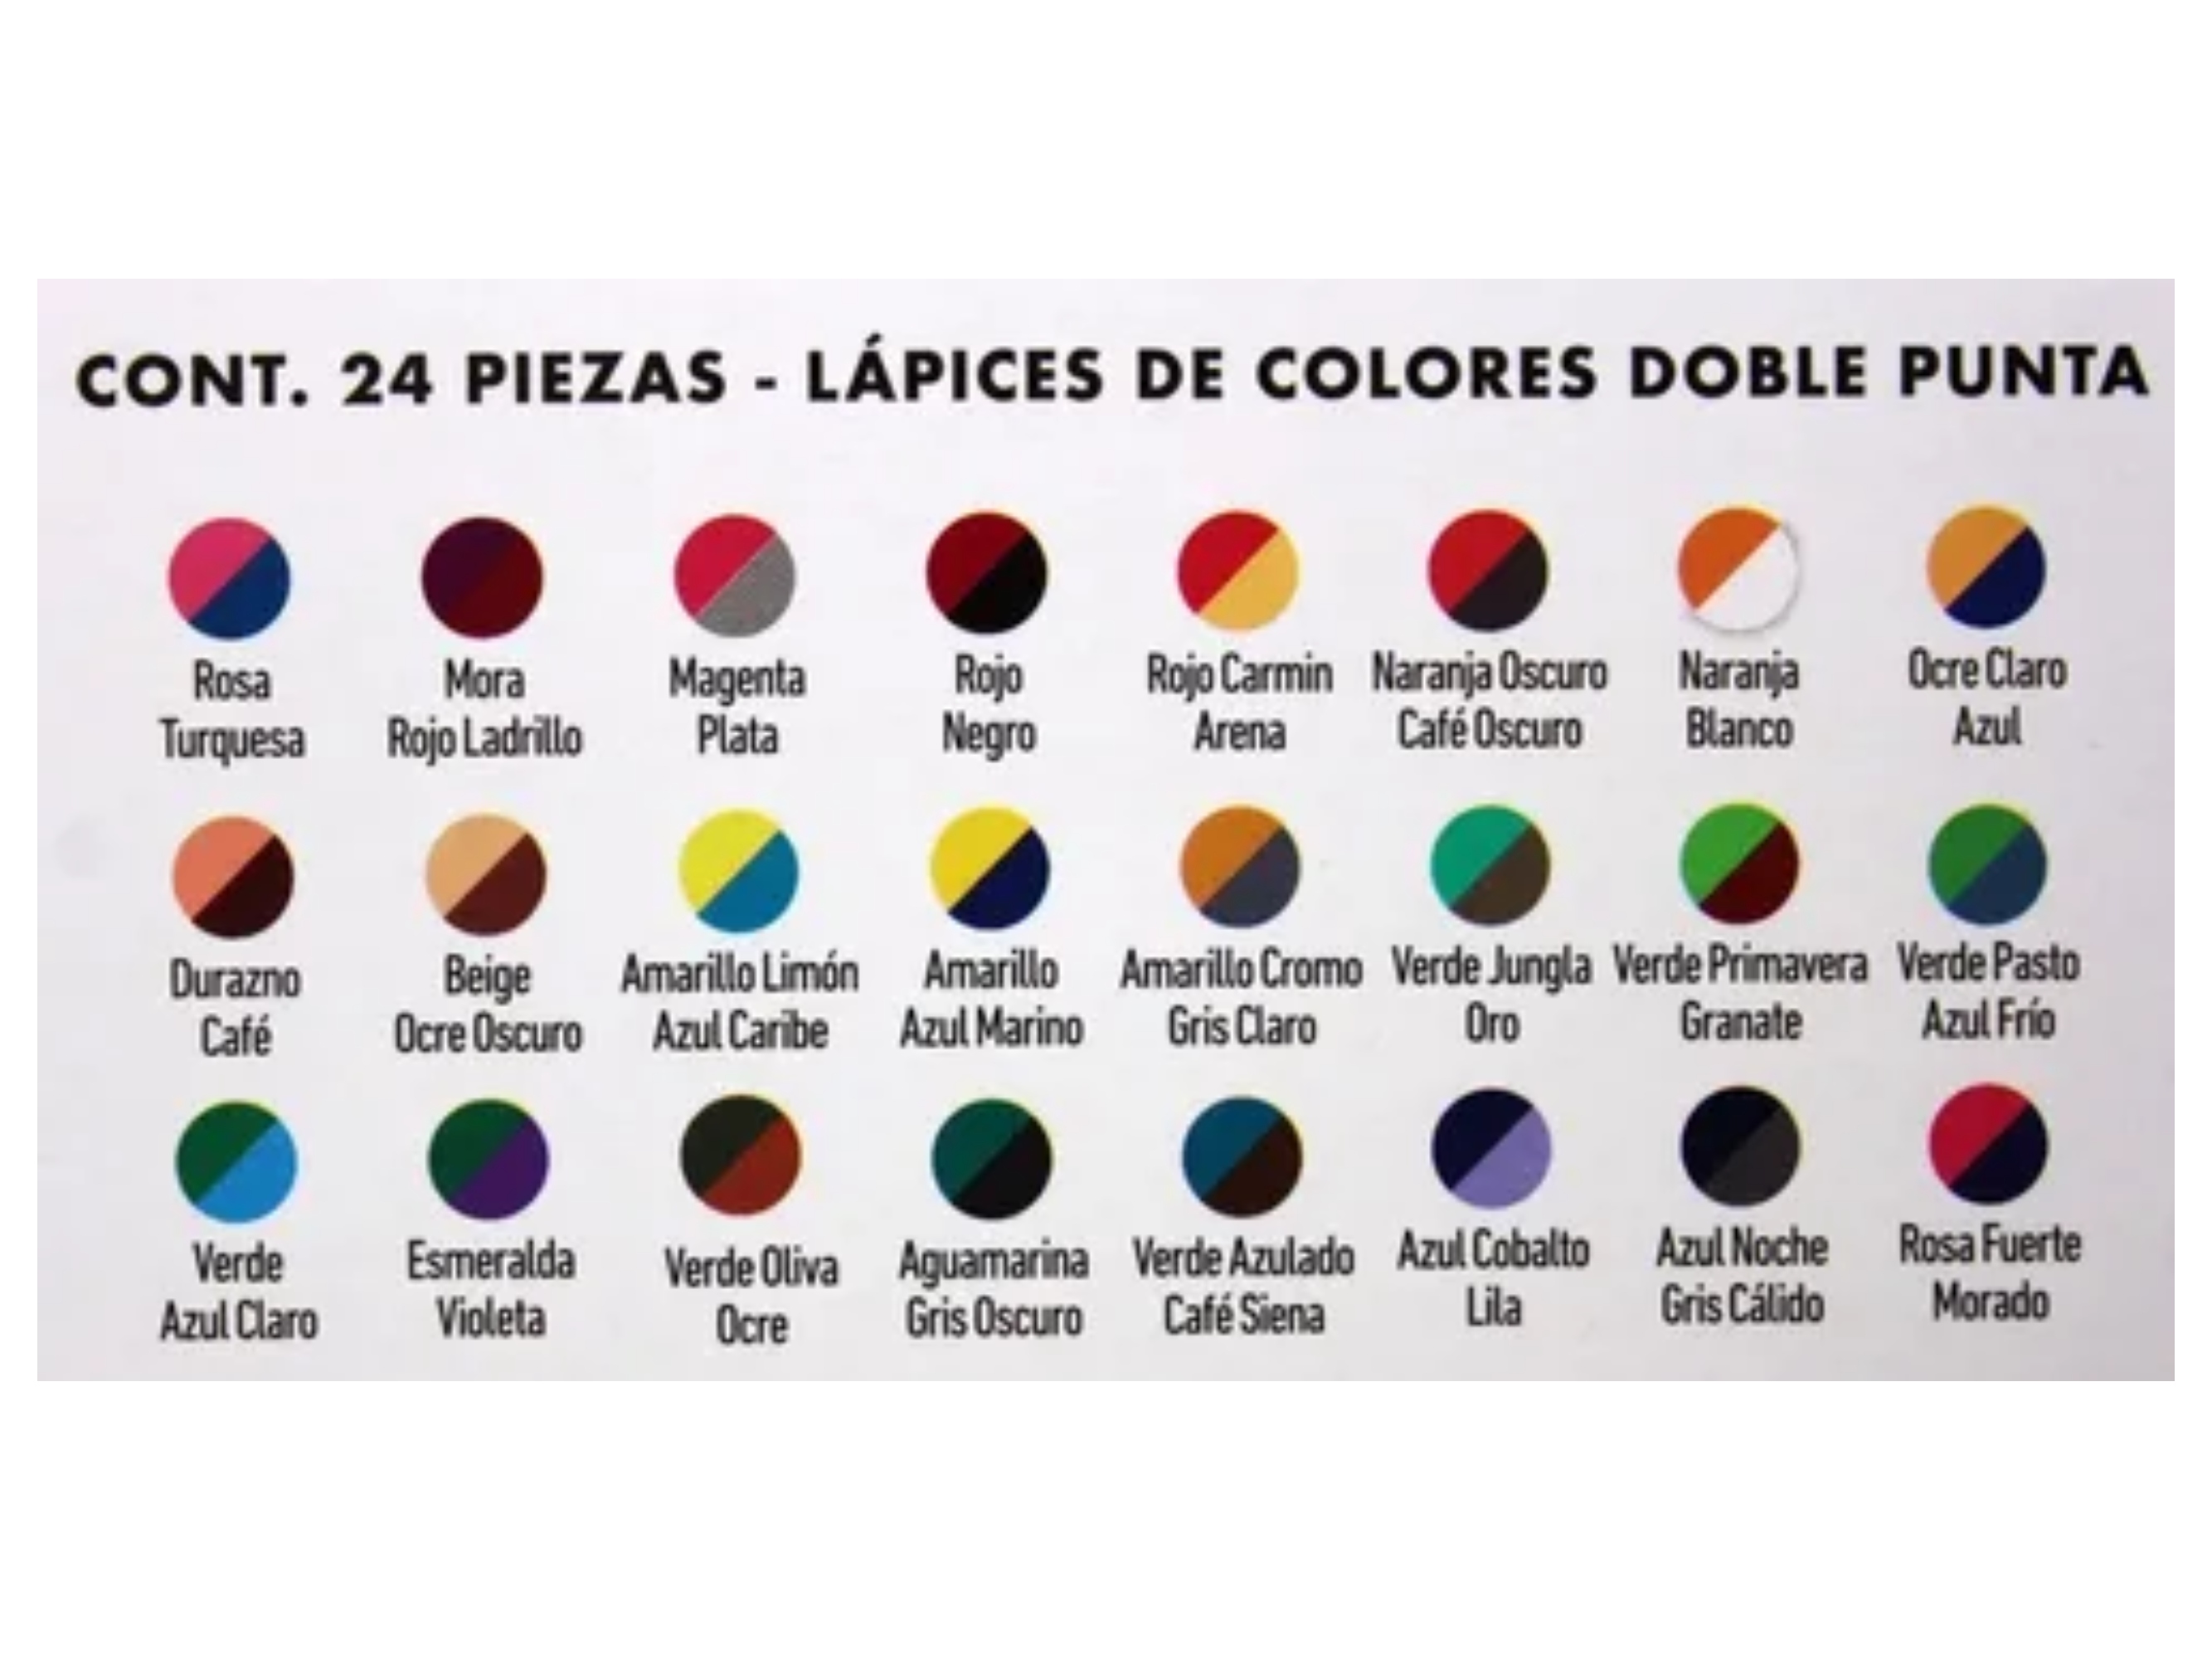 Lápices De Colores Doblecolor